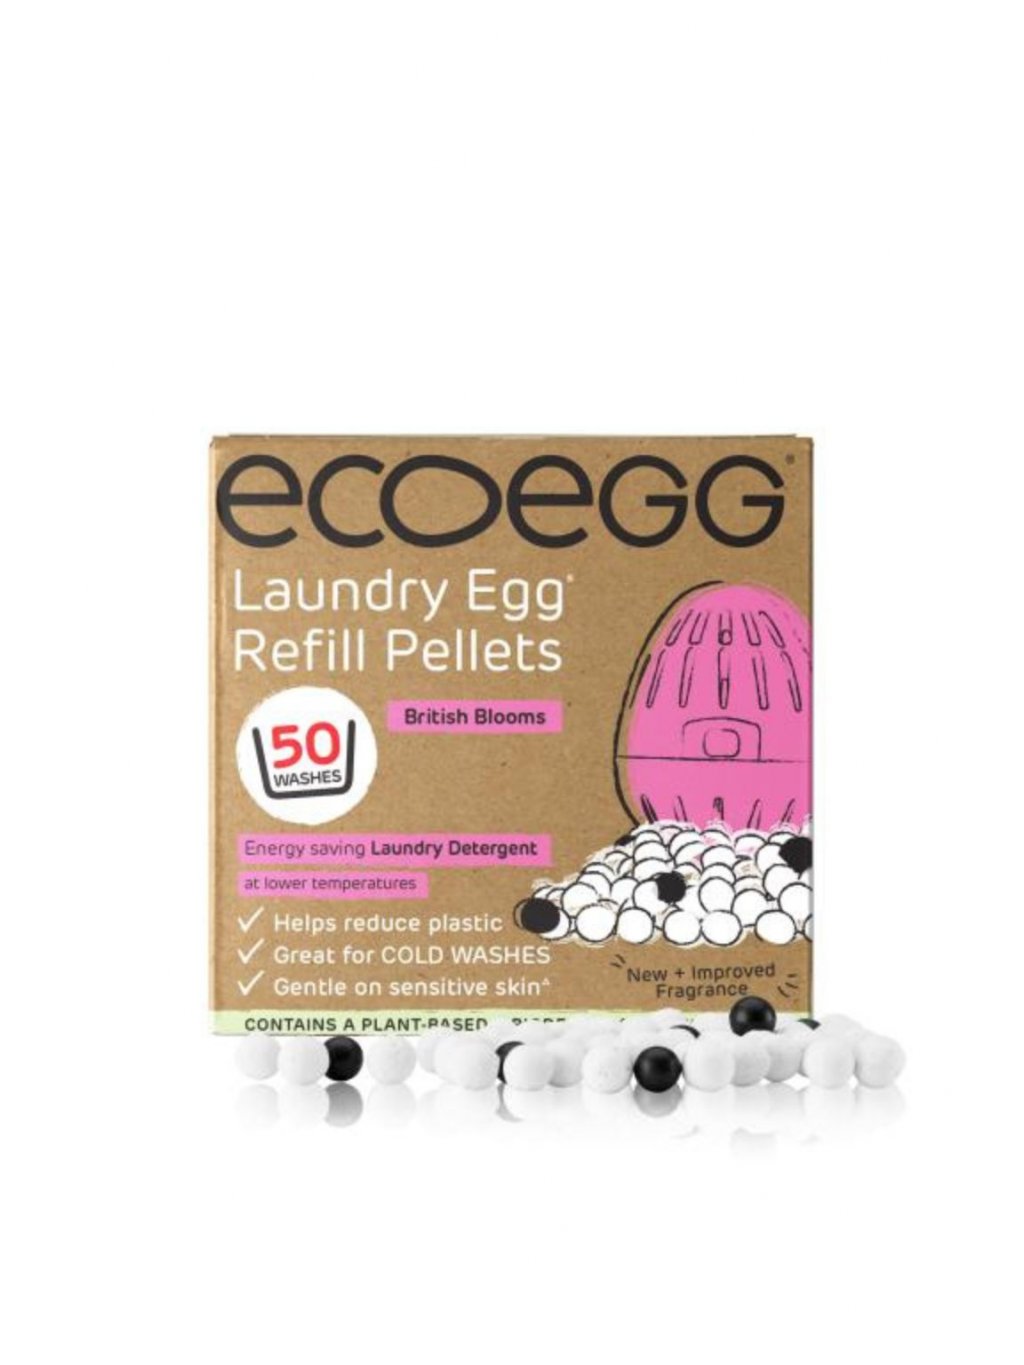 Ecoegg Náplň do pracího vajíčka s vůní britských květů - na 50 pracích cyklů - vhodné pro alergiky i ekzematiky Ecoegg